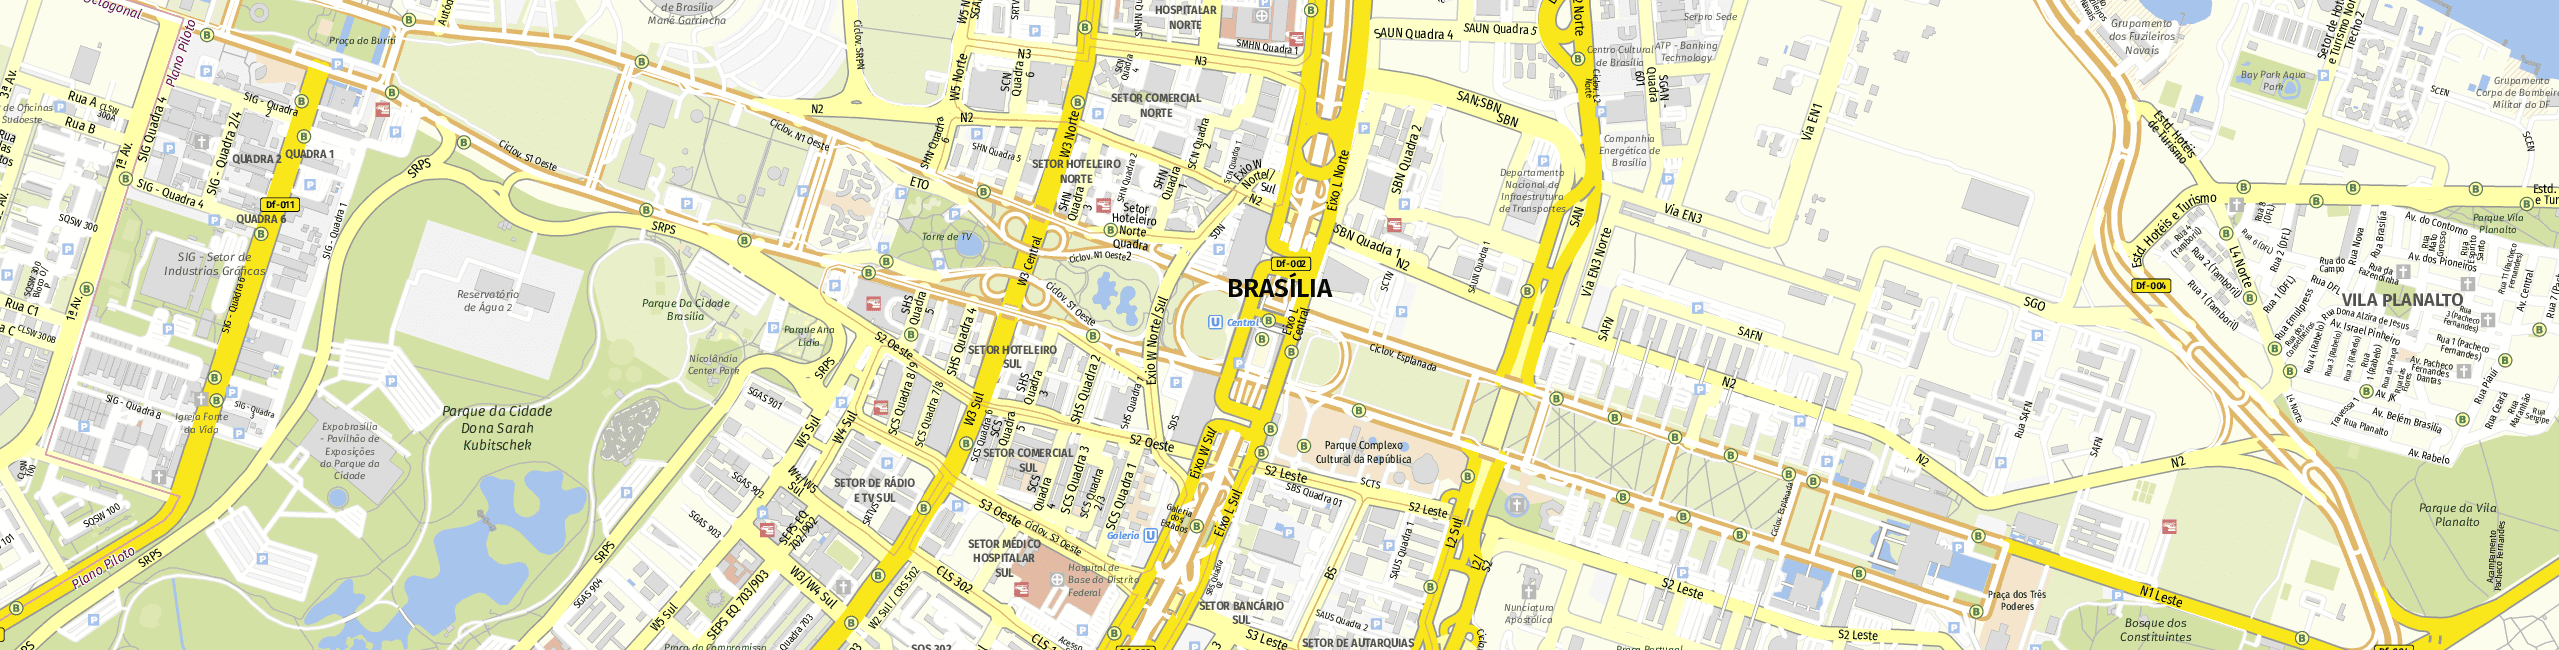 Stadtplan Brasília zum Downloaden.